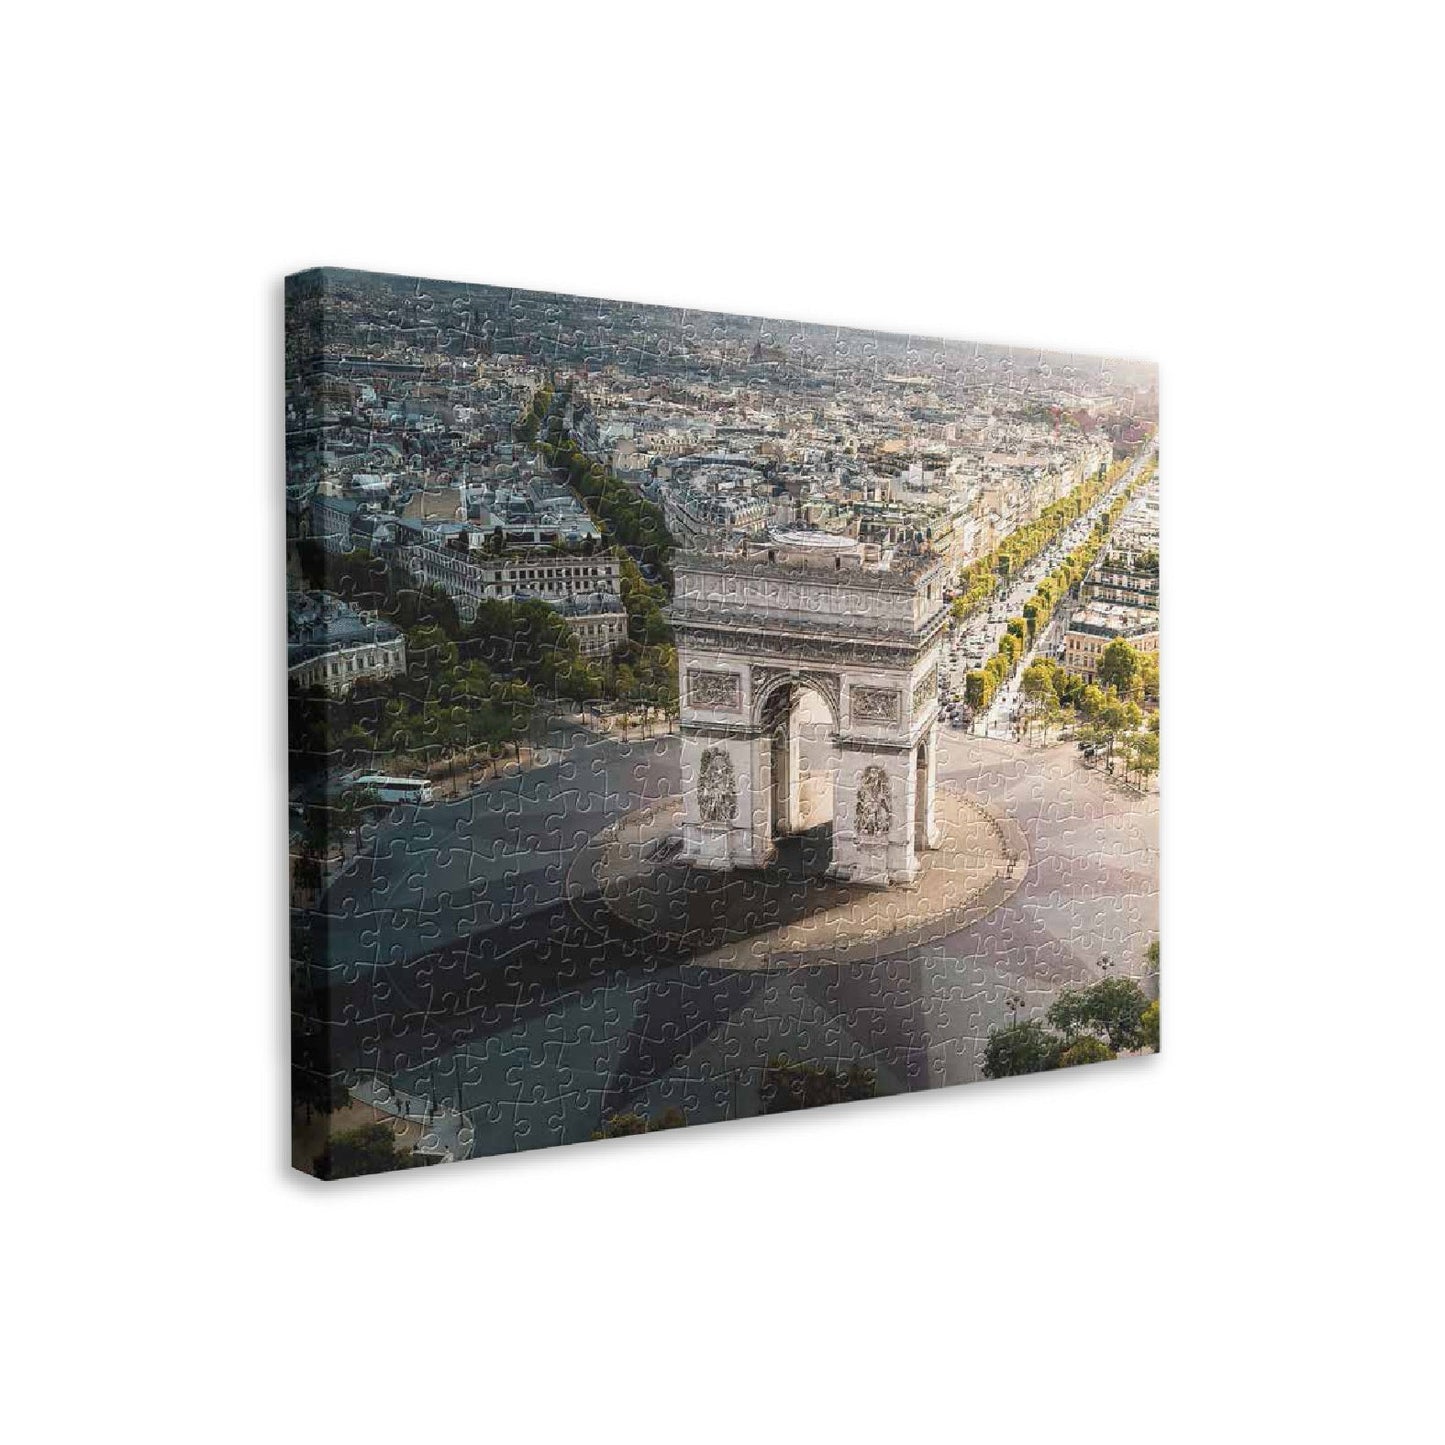 Aerial Photography - Arc De Triomphe, Paris - 366 Piece Jigsaw Puzzle